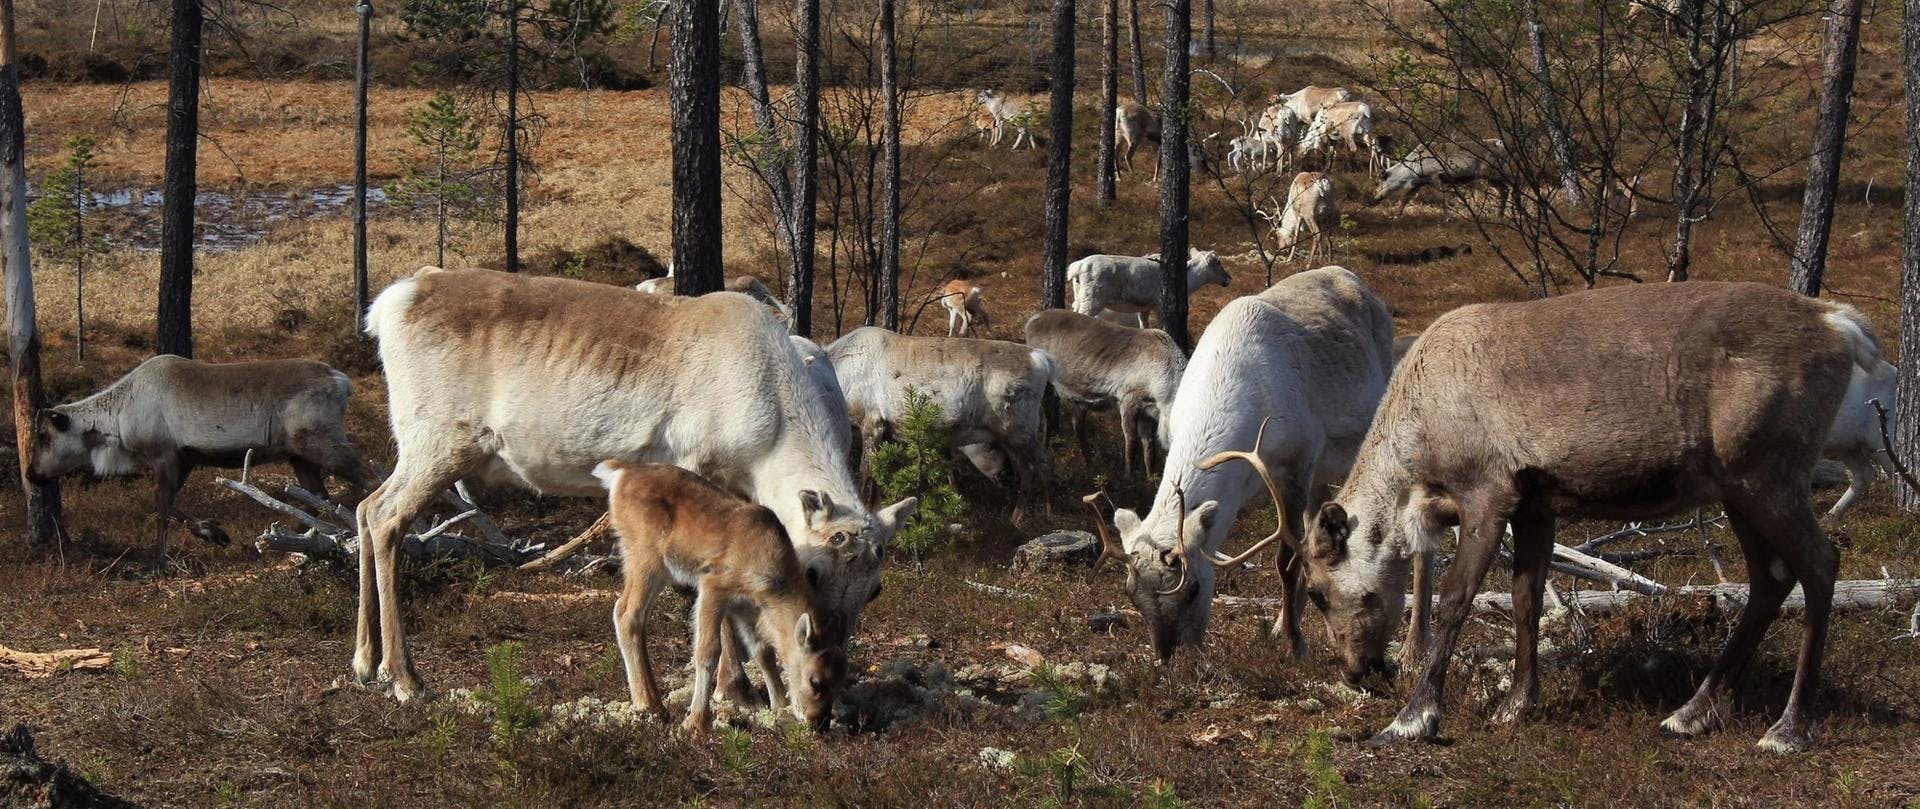 Pyhä-Luosto 的驯鹿农场和野生动物园